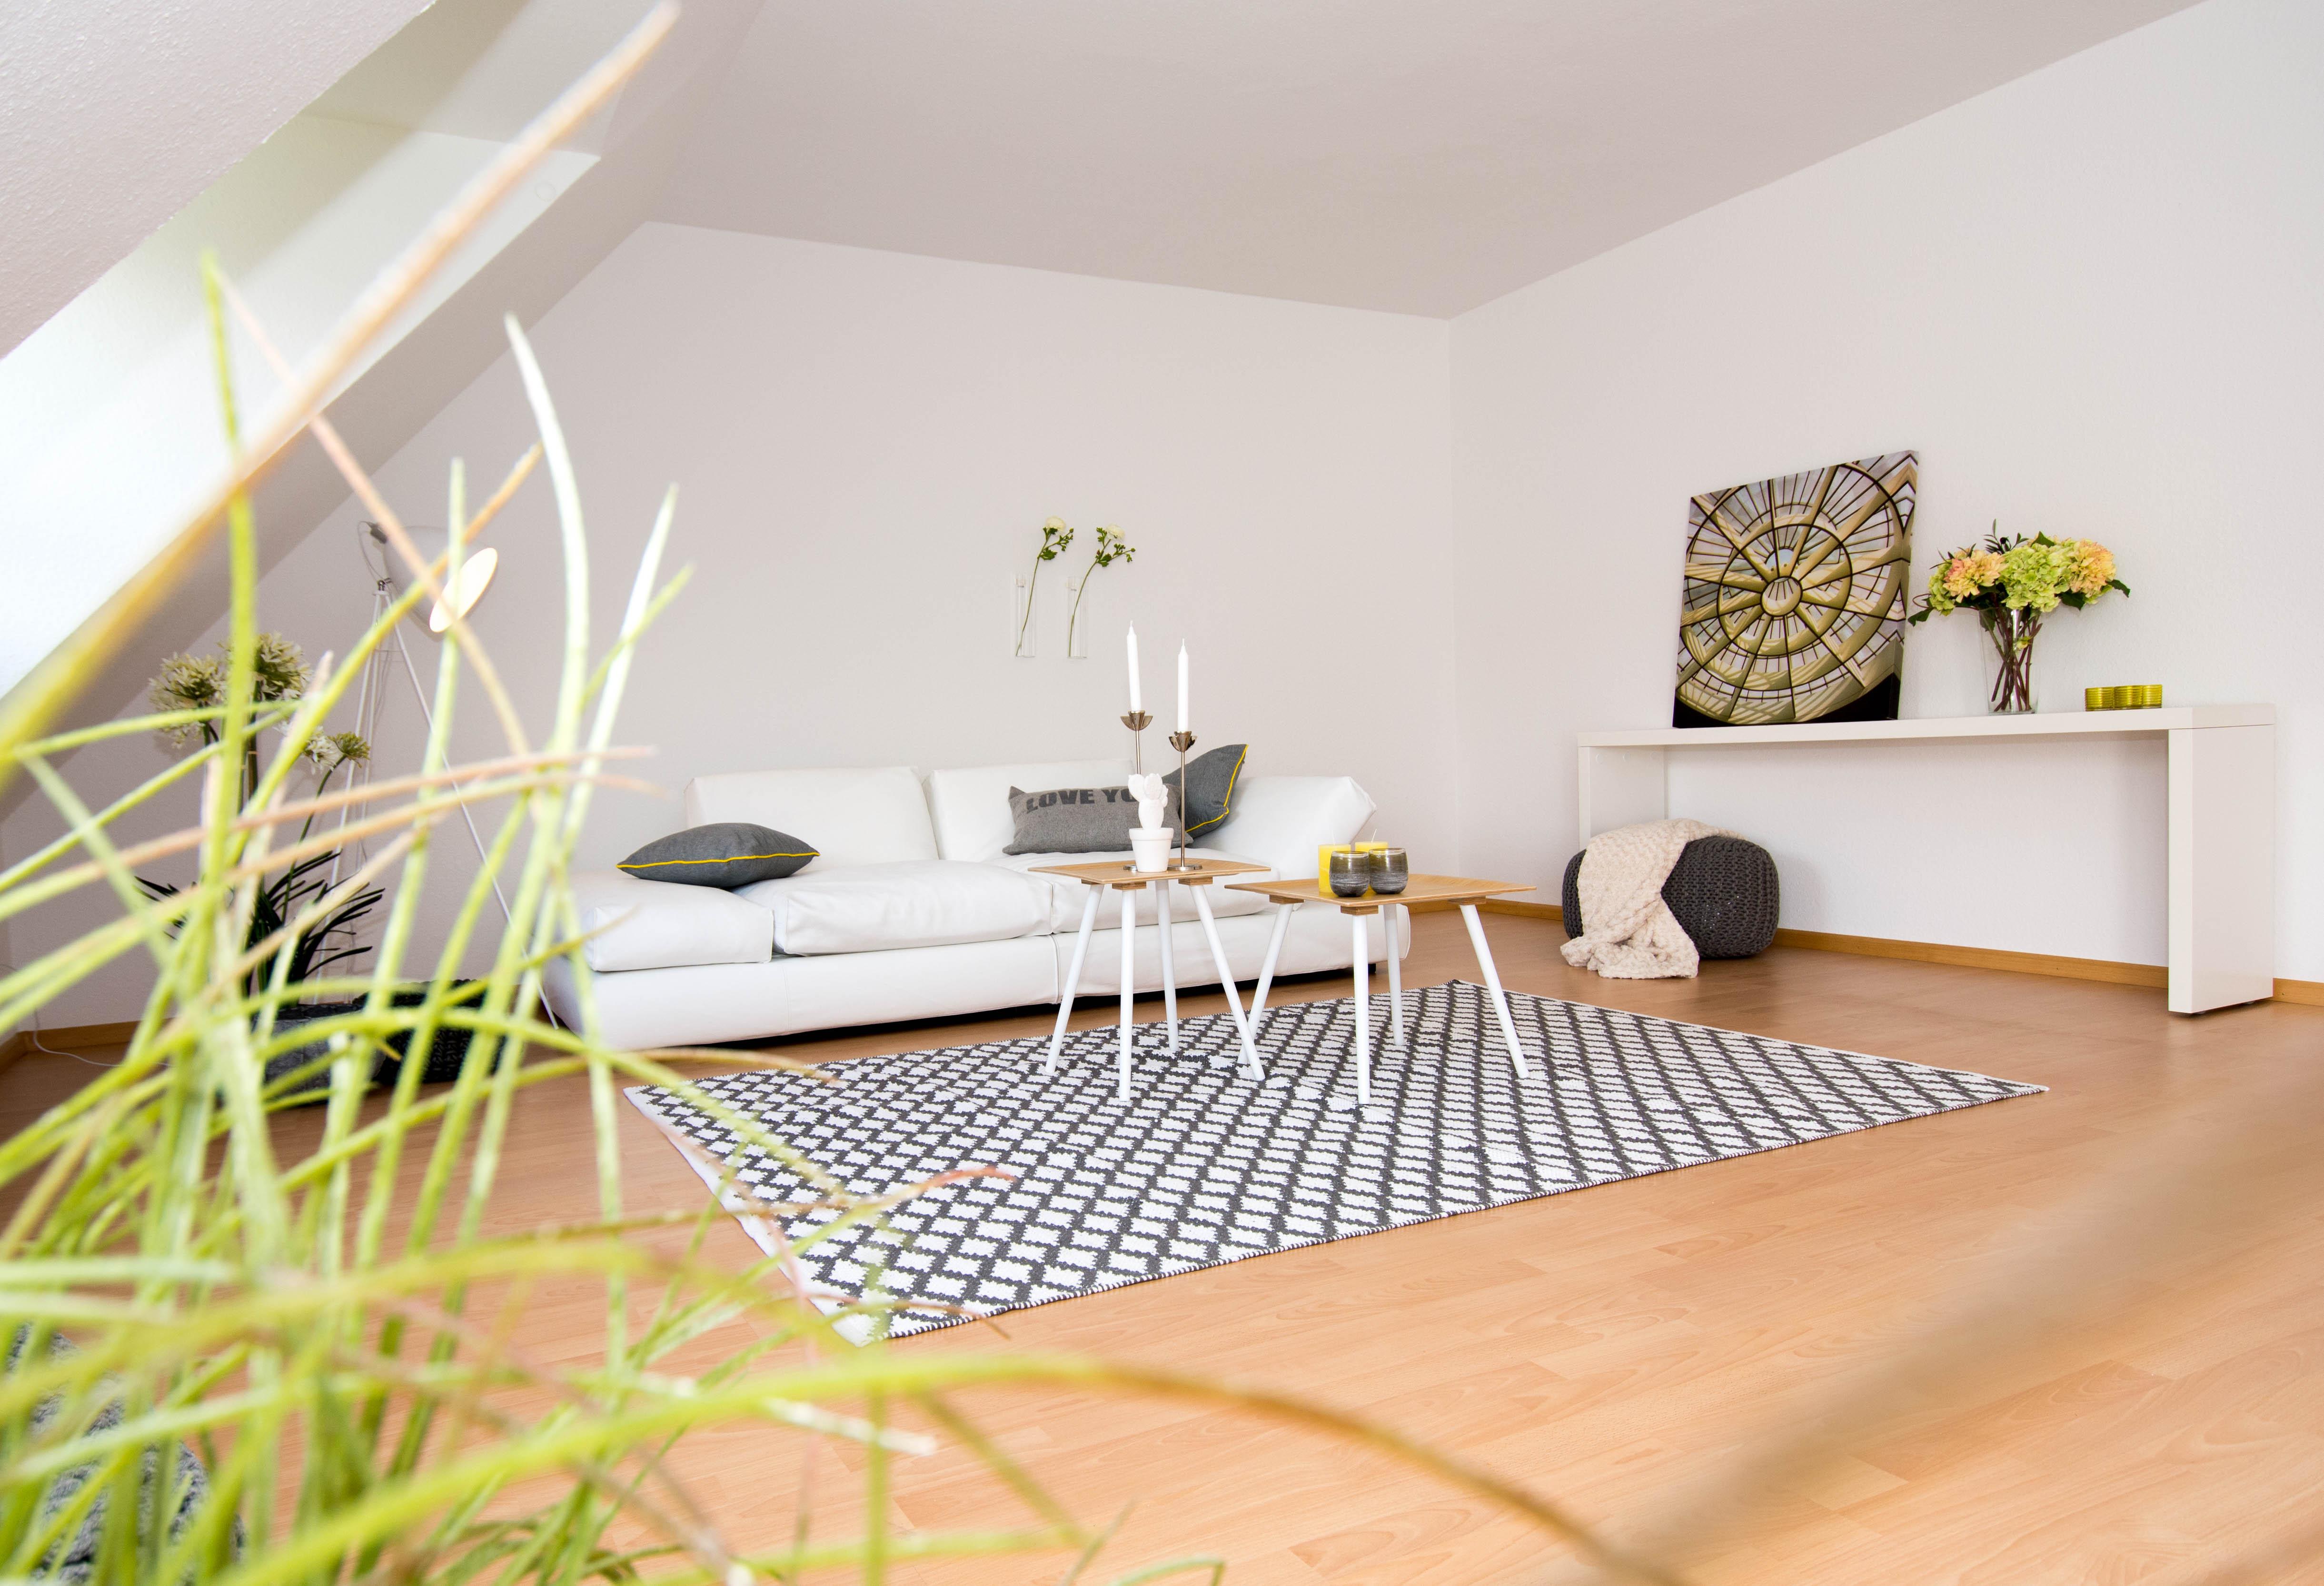 Wohnzimmer #couchtisch #dachschräge #wandfarbe #teppich #pouf #laminat #sofa #konsolentisch #weißerkonsolentisch ©Luna Home Staging